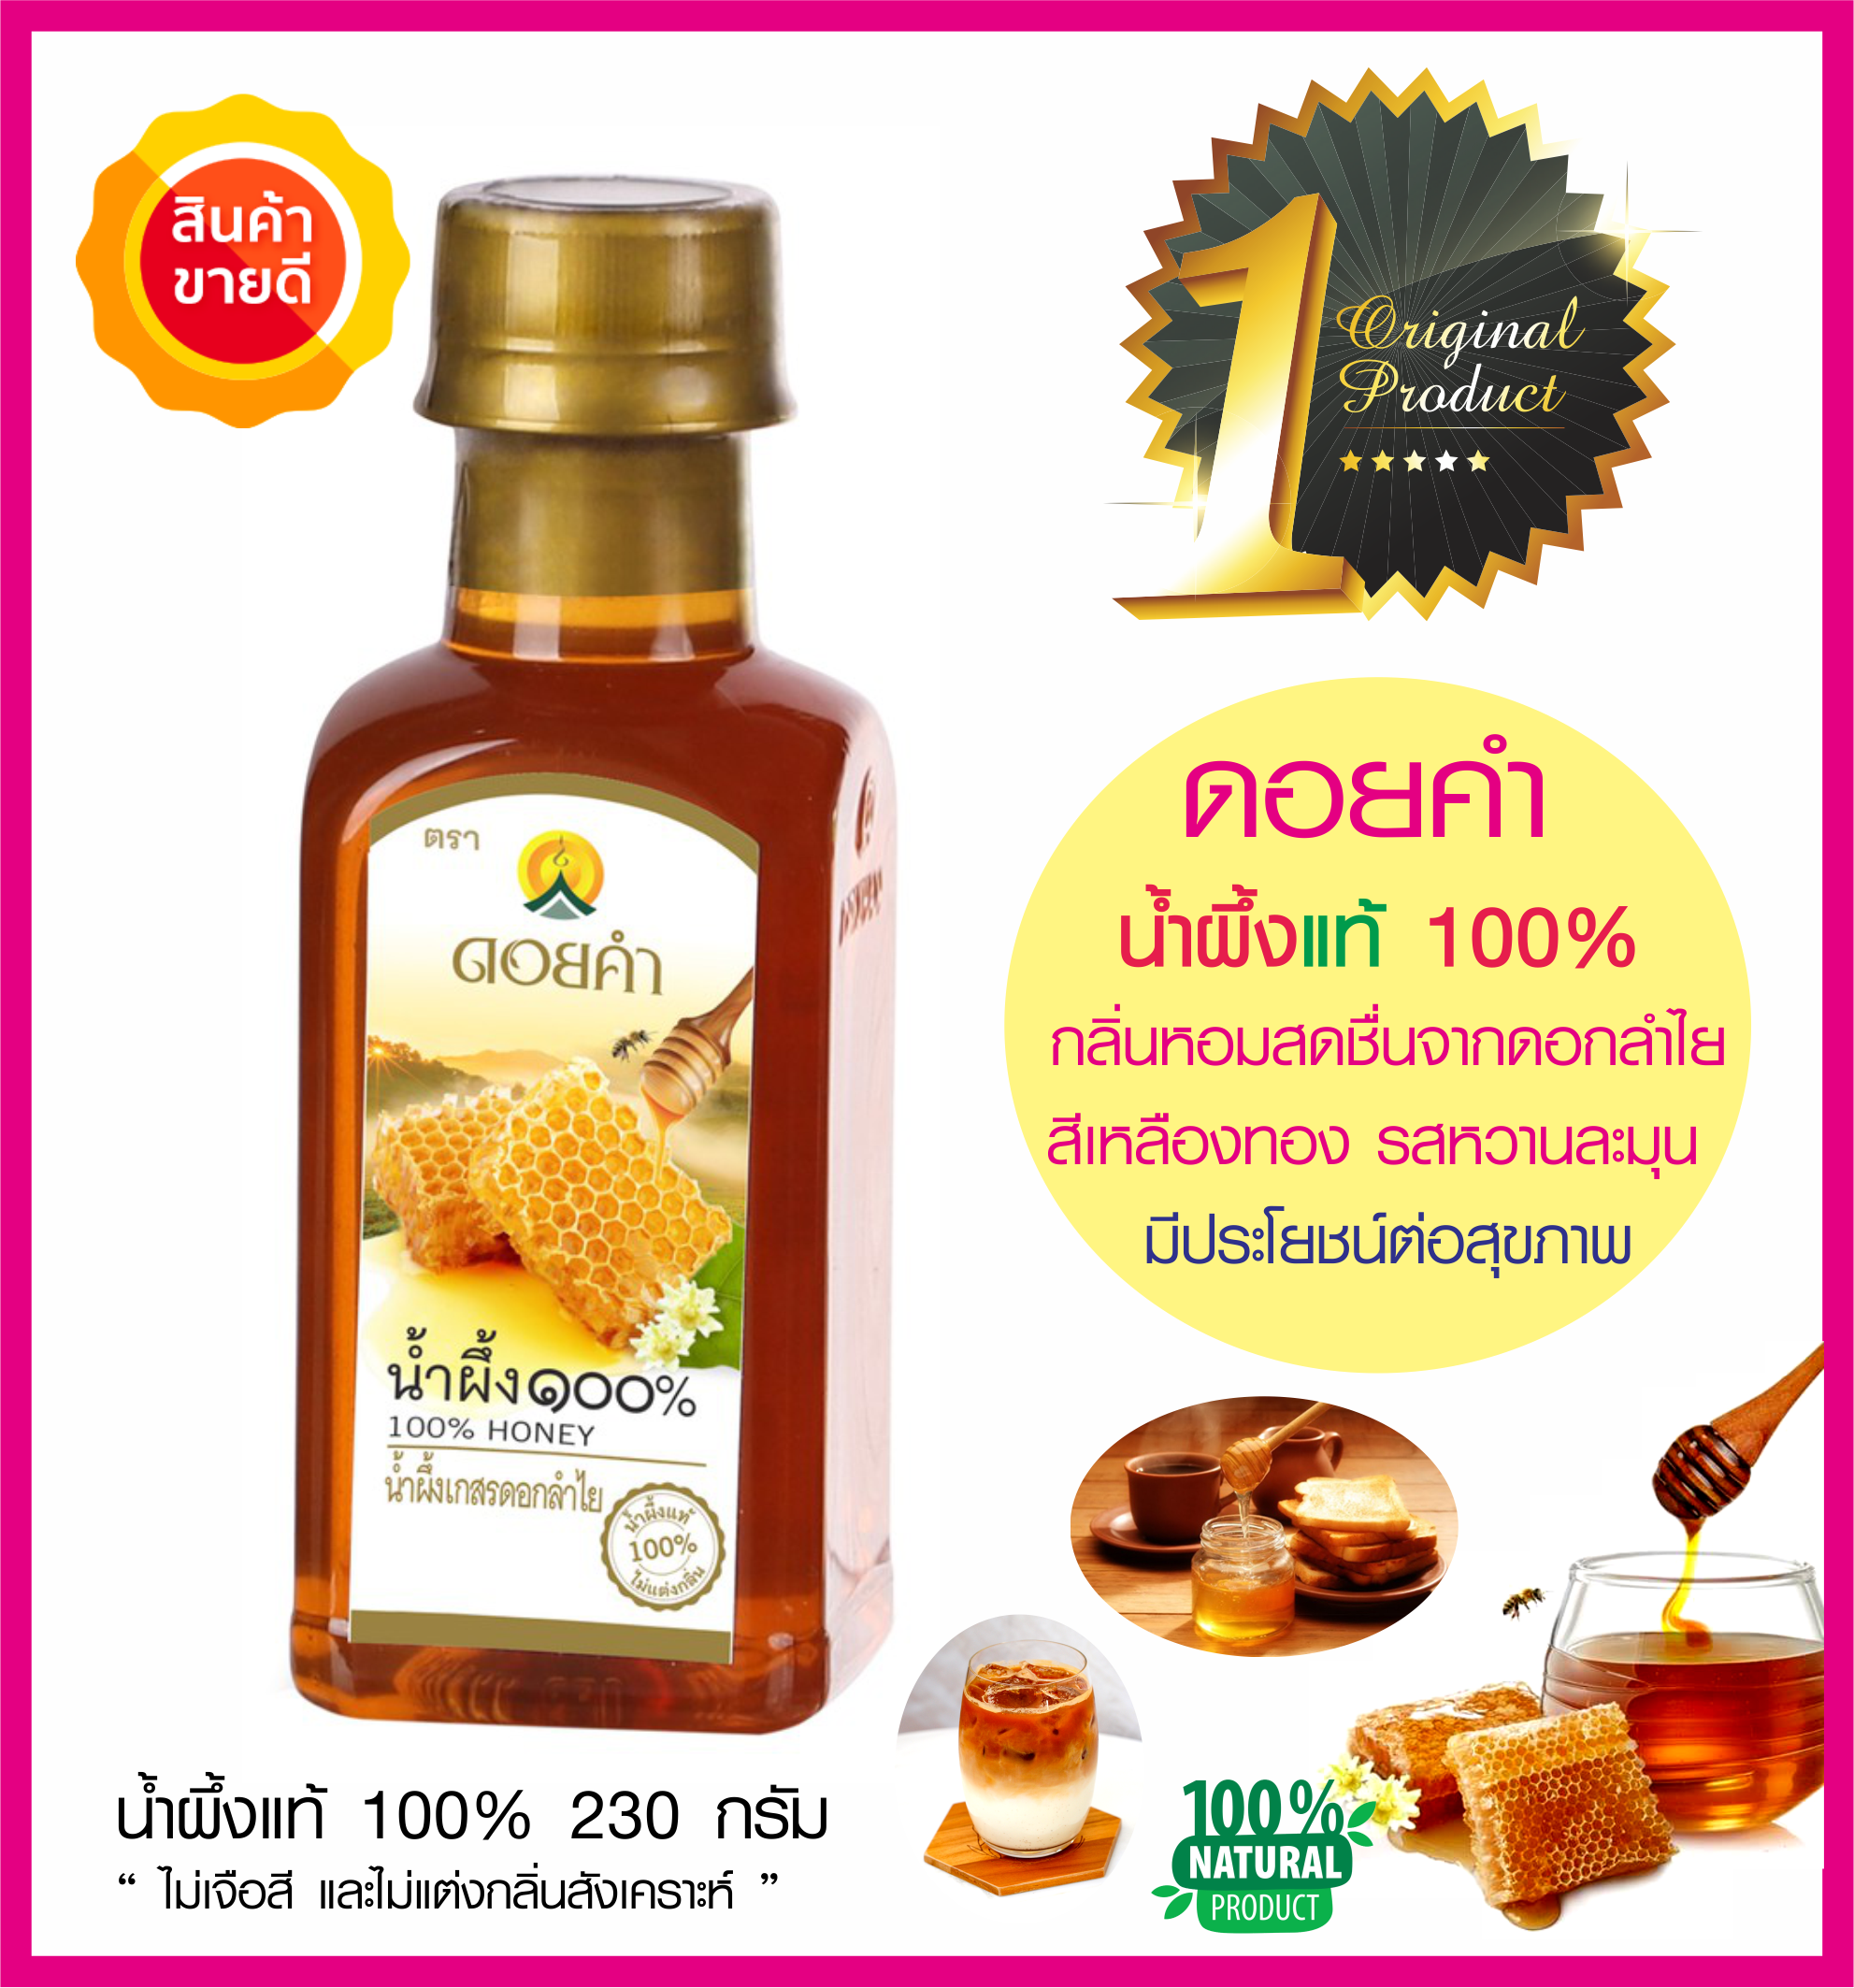 น้ำผึ้งแท้ 100% ดอยคำ สีเหลืองทอง มีกลิ่นหอมสดชื่นจากดอกลำไย รสหวานละมุน ผ่อนคลาย ทางเลือกสุขภาพ เหมาะกับทำอาหารสุขภาพ อาหารคลีน (230ก.)